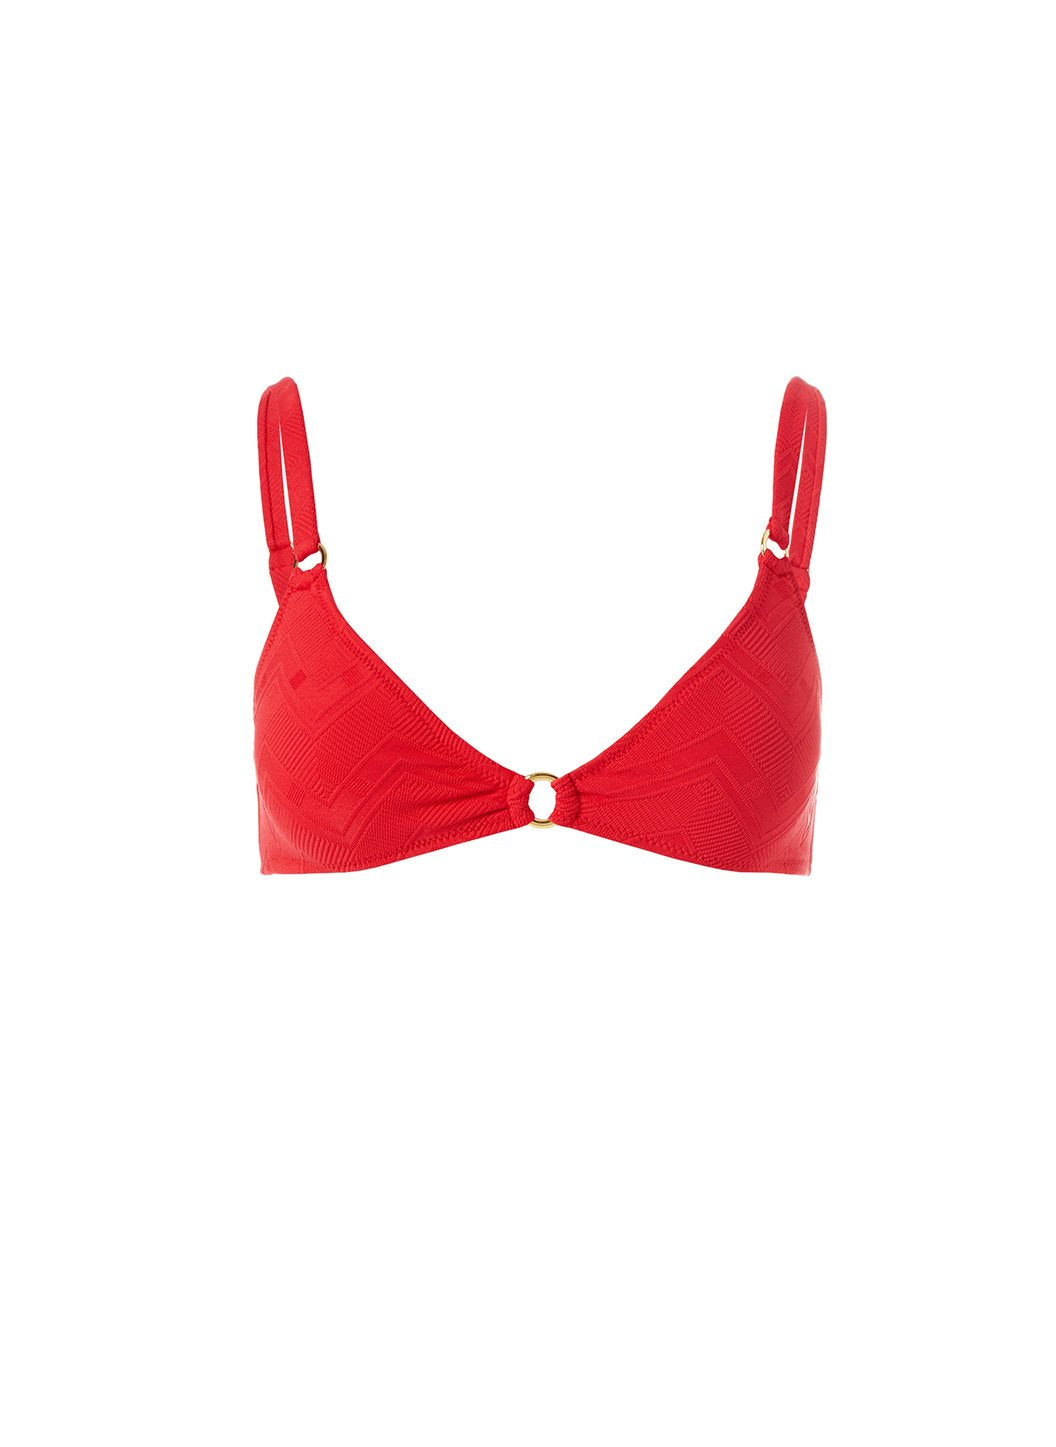 Montenegro Red Zigzag Bikini Top